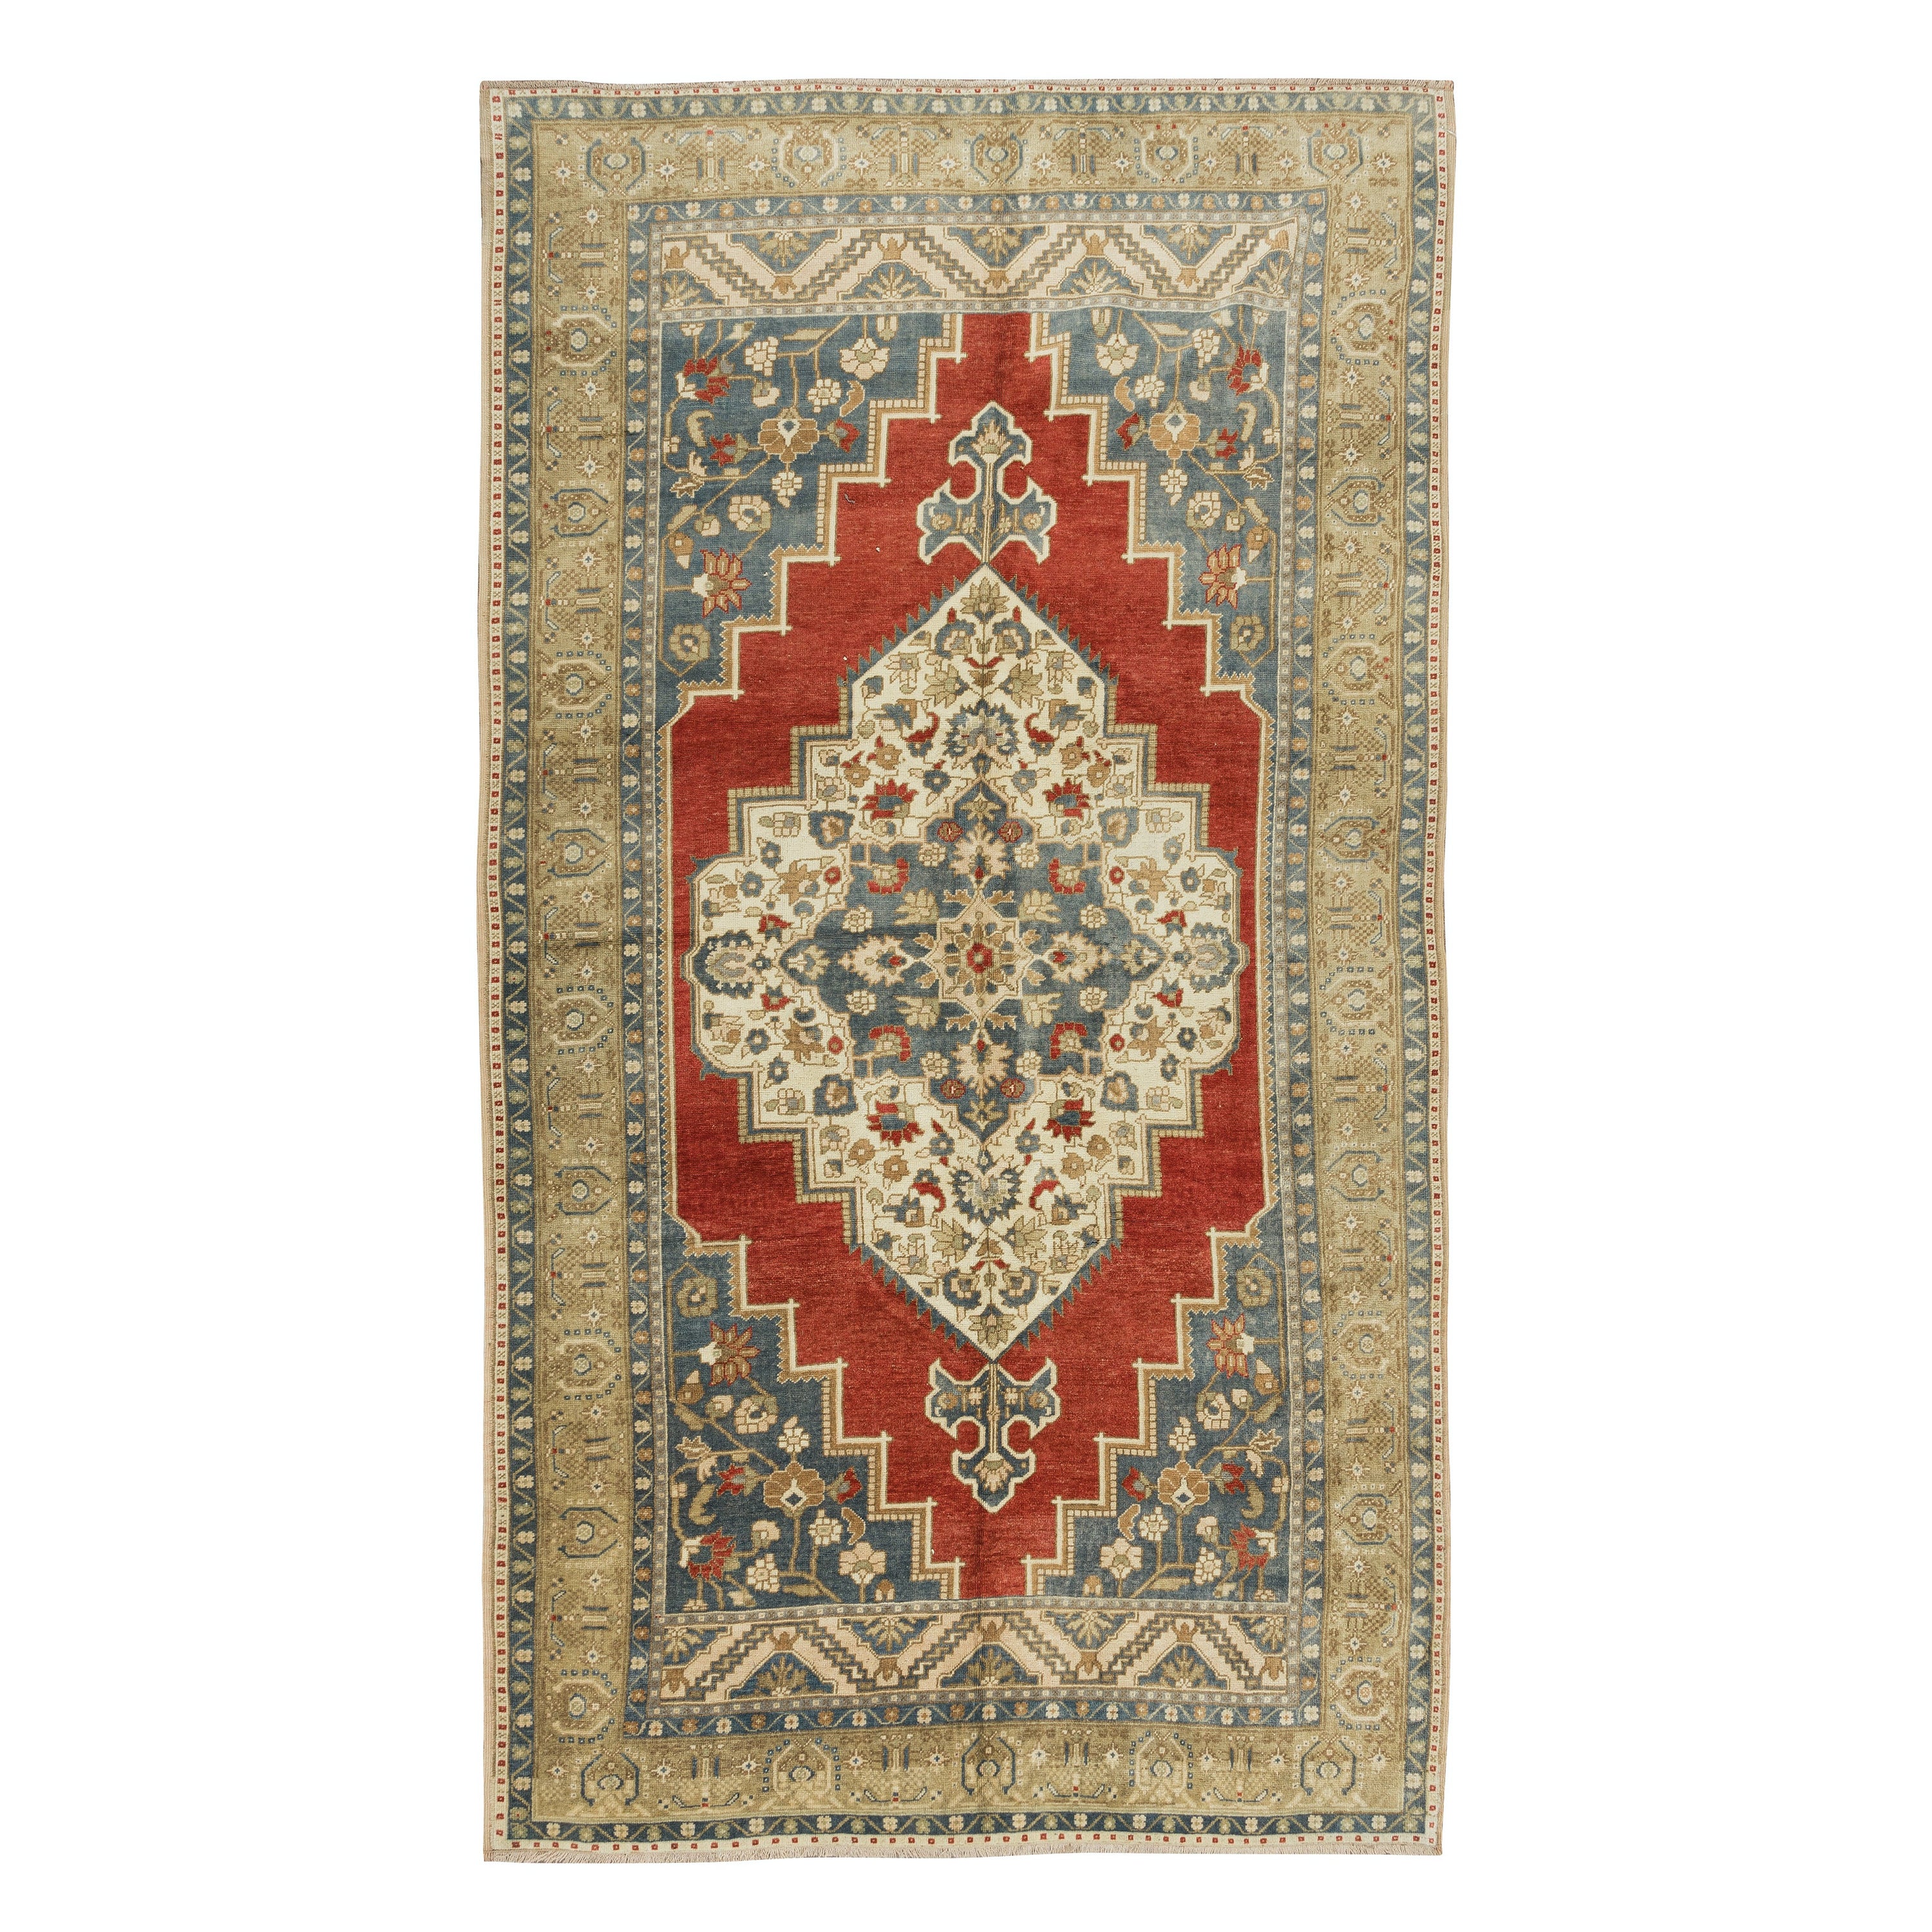 6x11 Ft Vintage Handmade Turkish Tribal Wool Rug, Medallion Design Unique Carpet For Sale